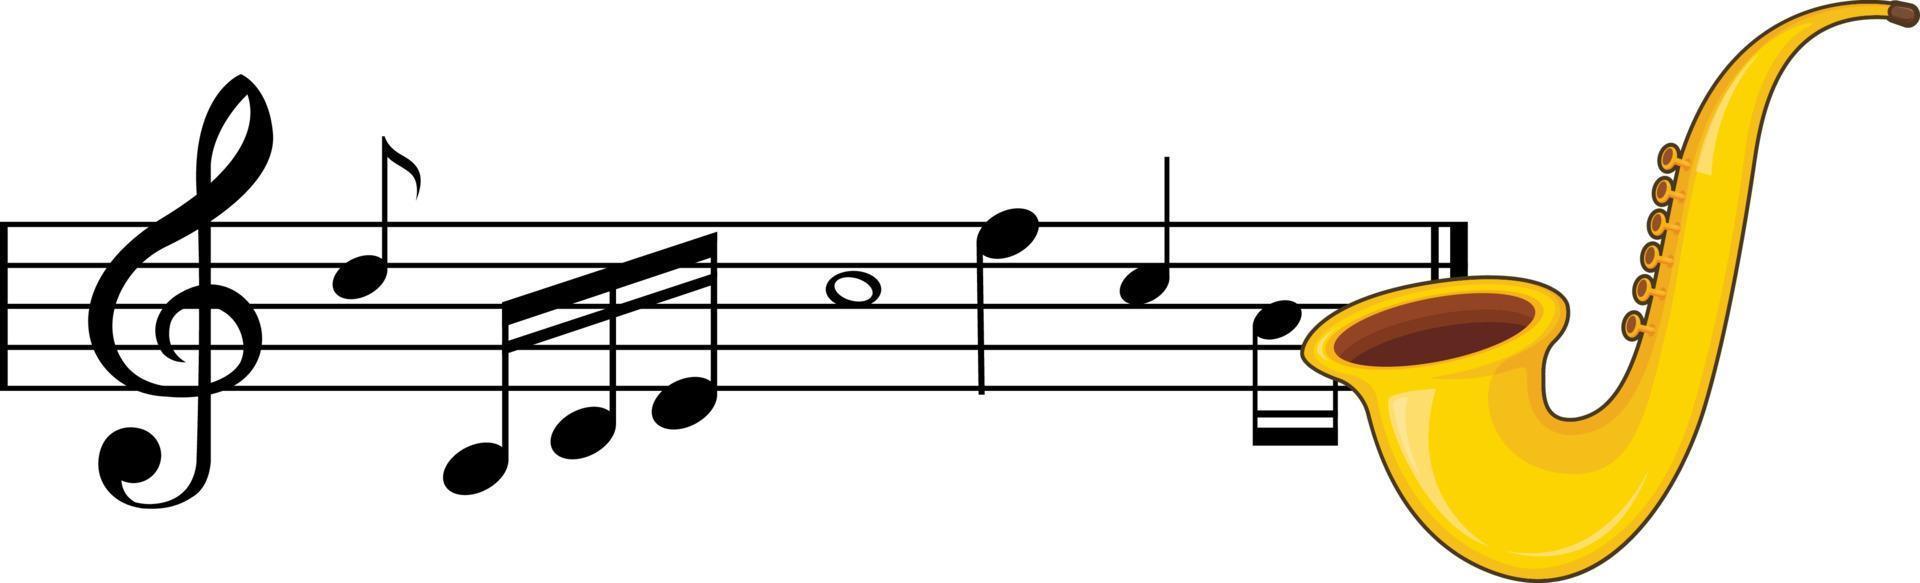 un sassofono con note musicali su sfondo bianco vettore